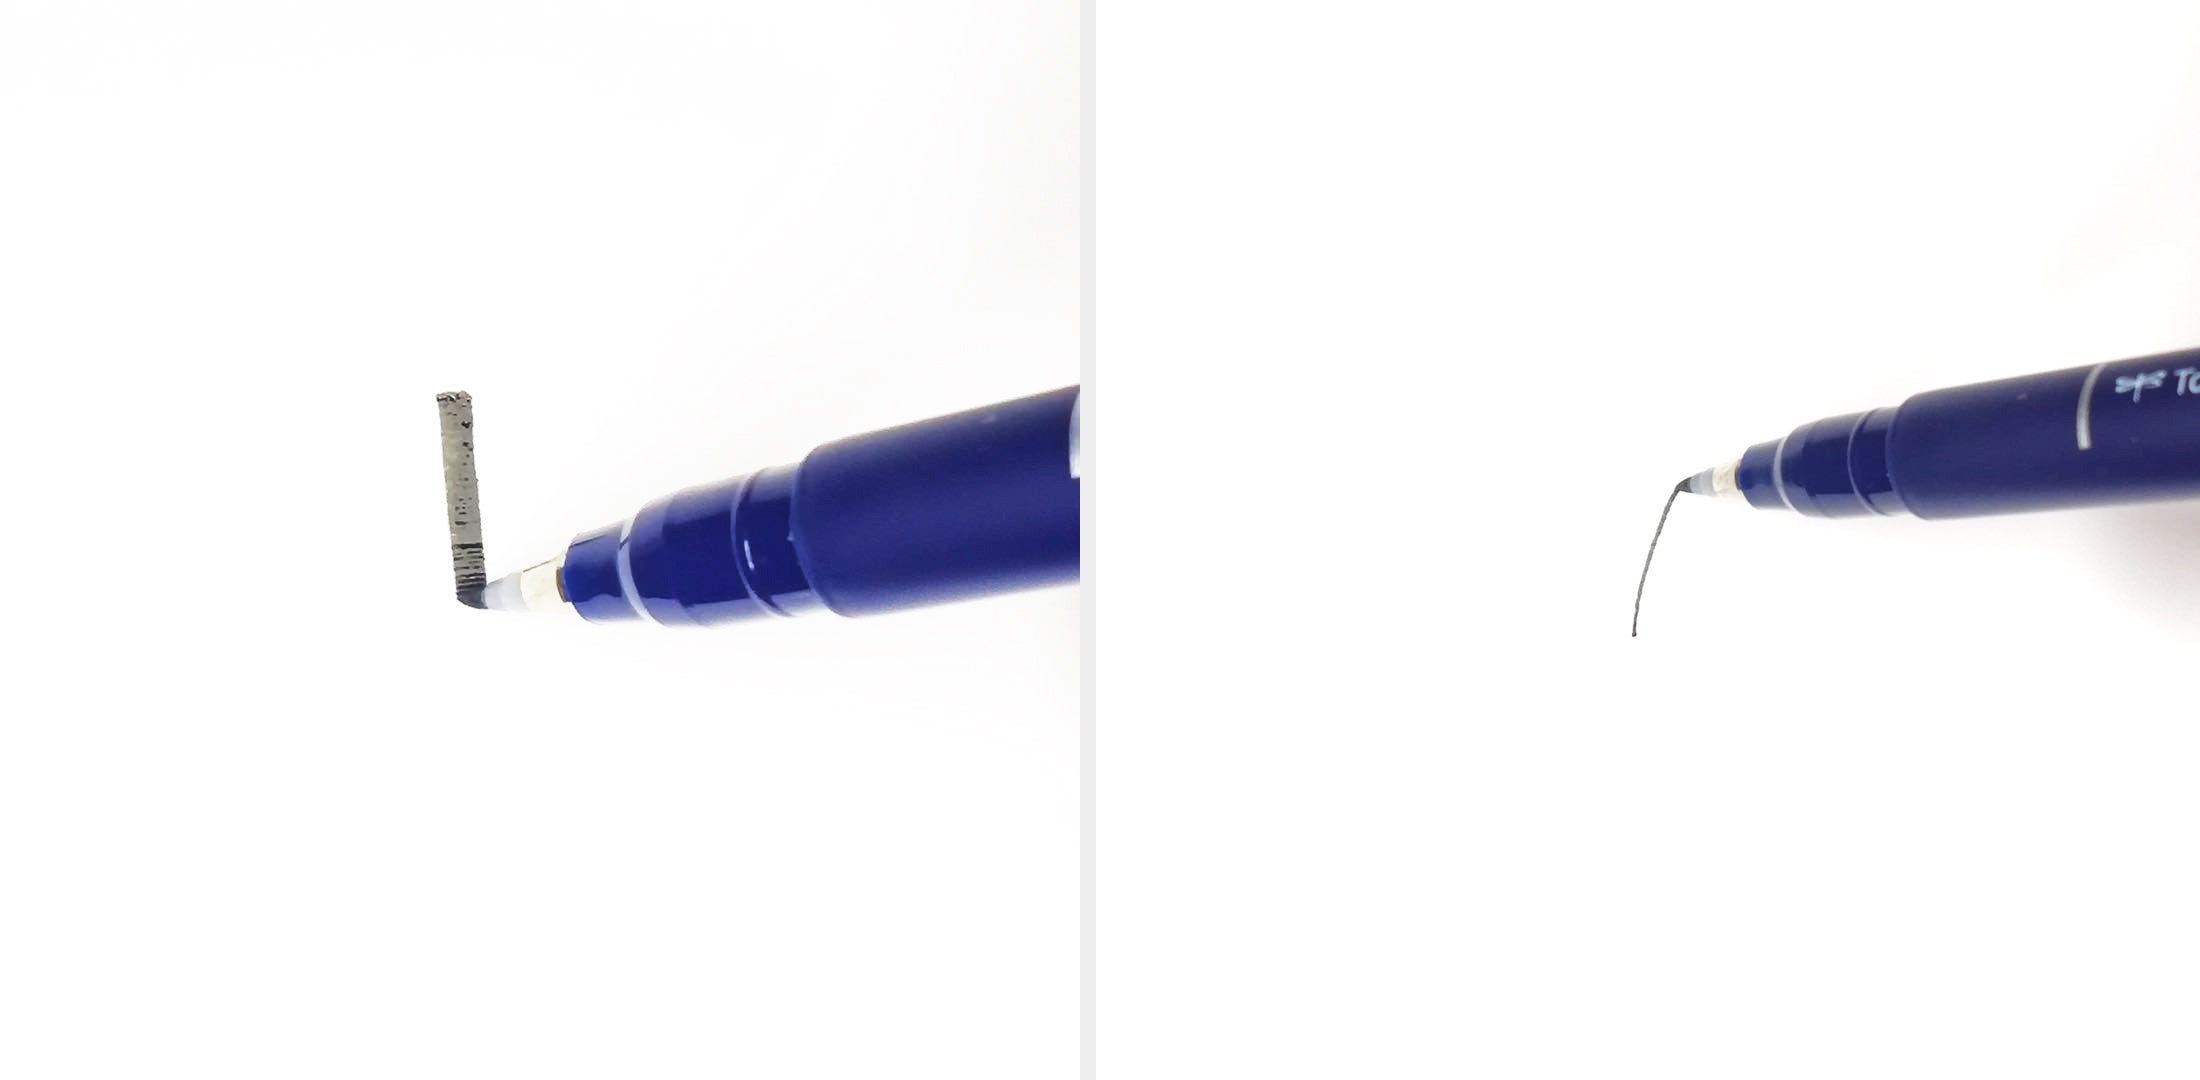 Maybe The Best for Brush Lettering Beginners - Tombow Fudenosuke Hard Tip Brush Pen